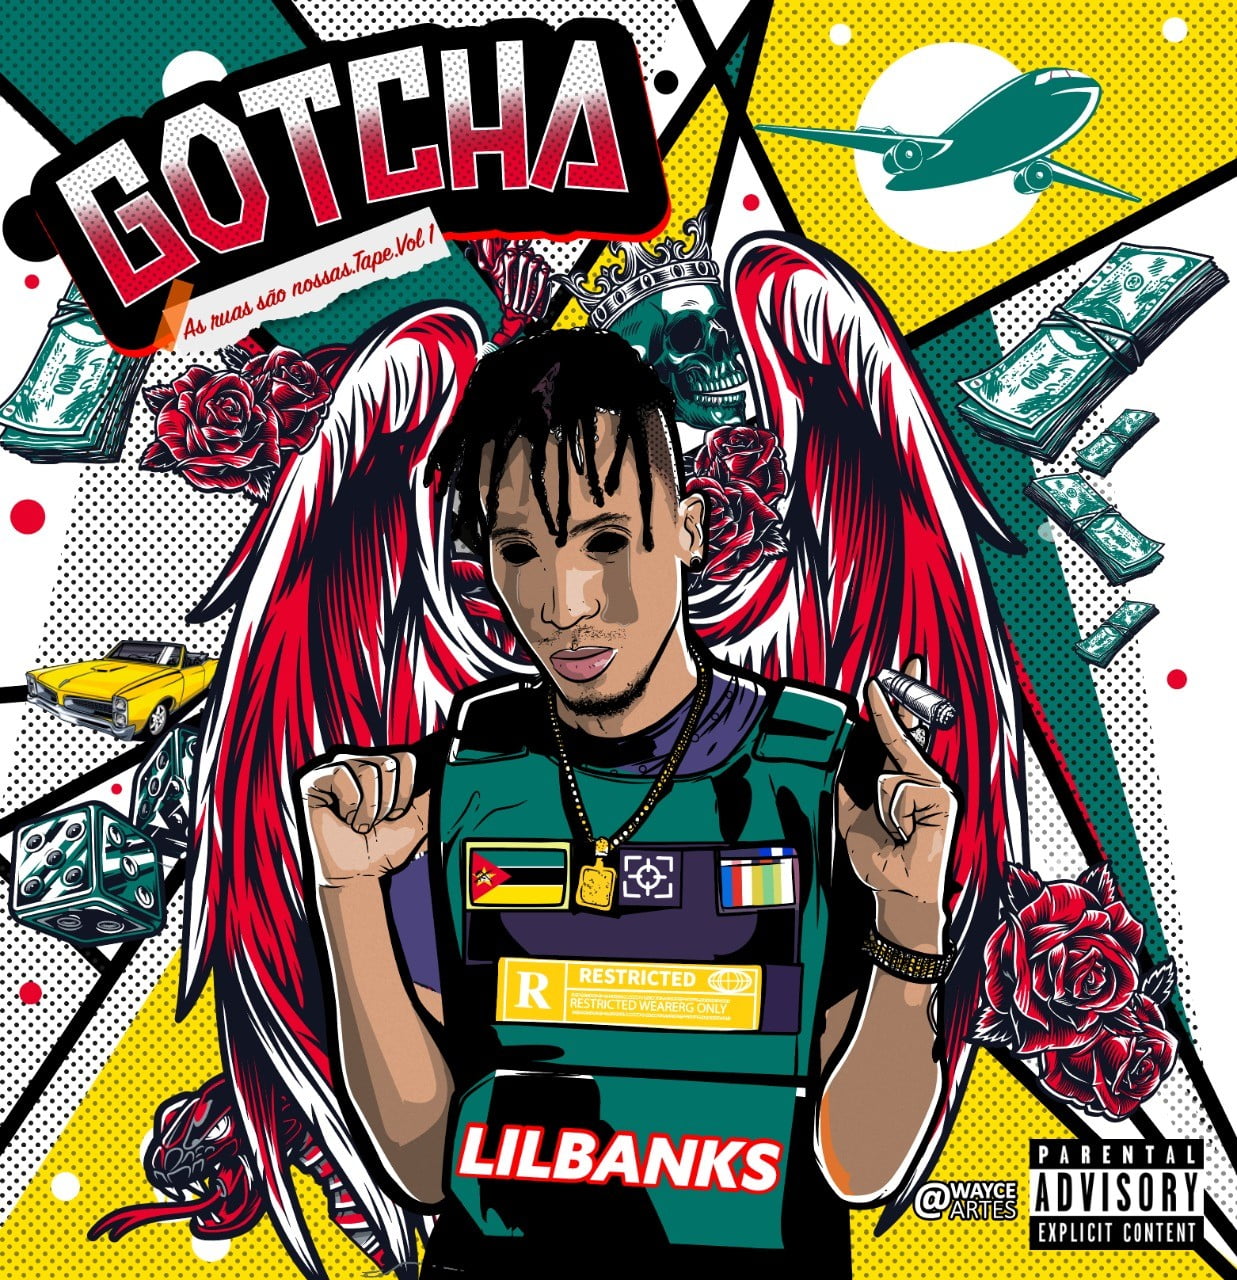 Lil Banks - GOTCHA (As Ruas São Nossas) Vol.1